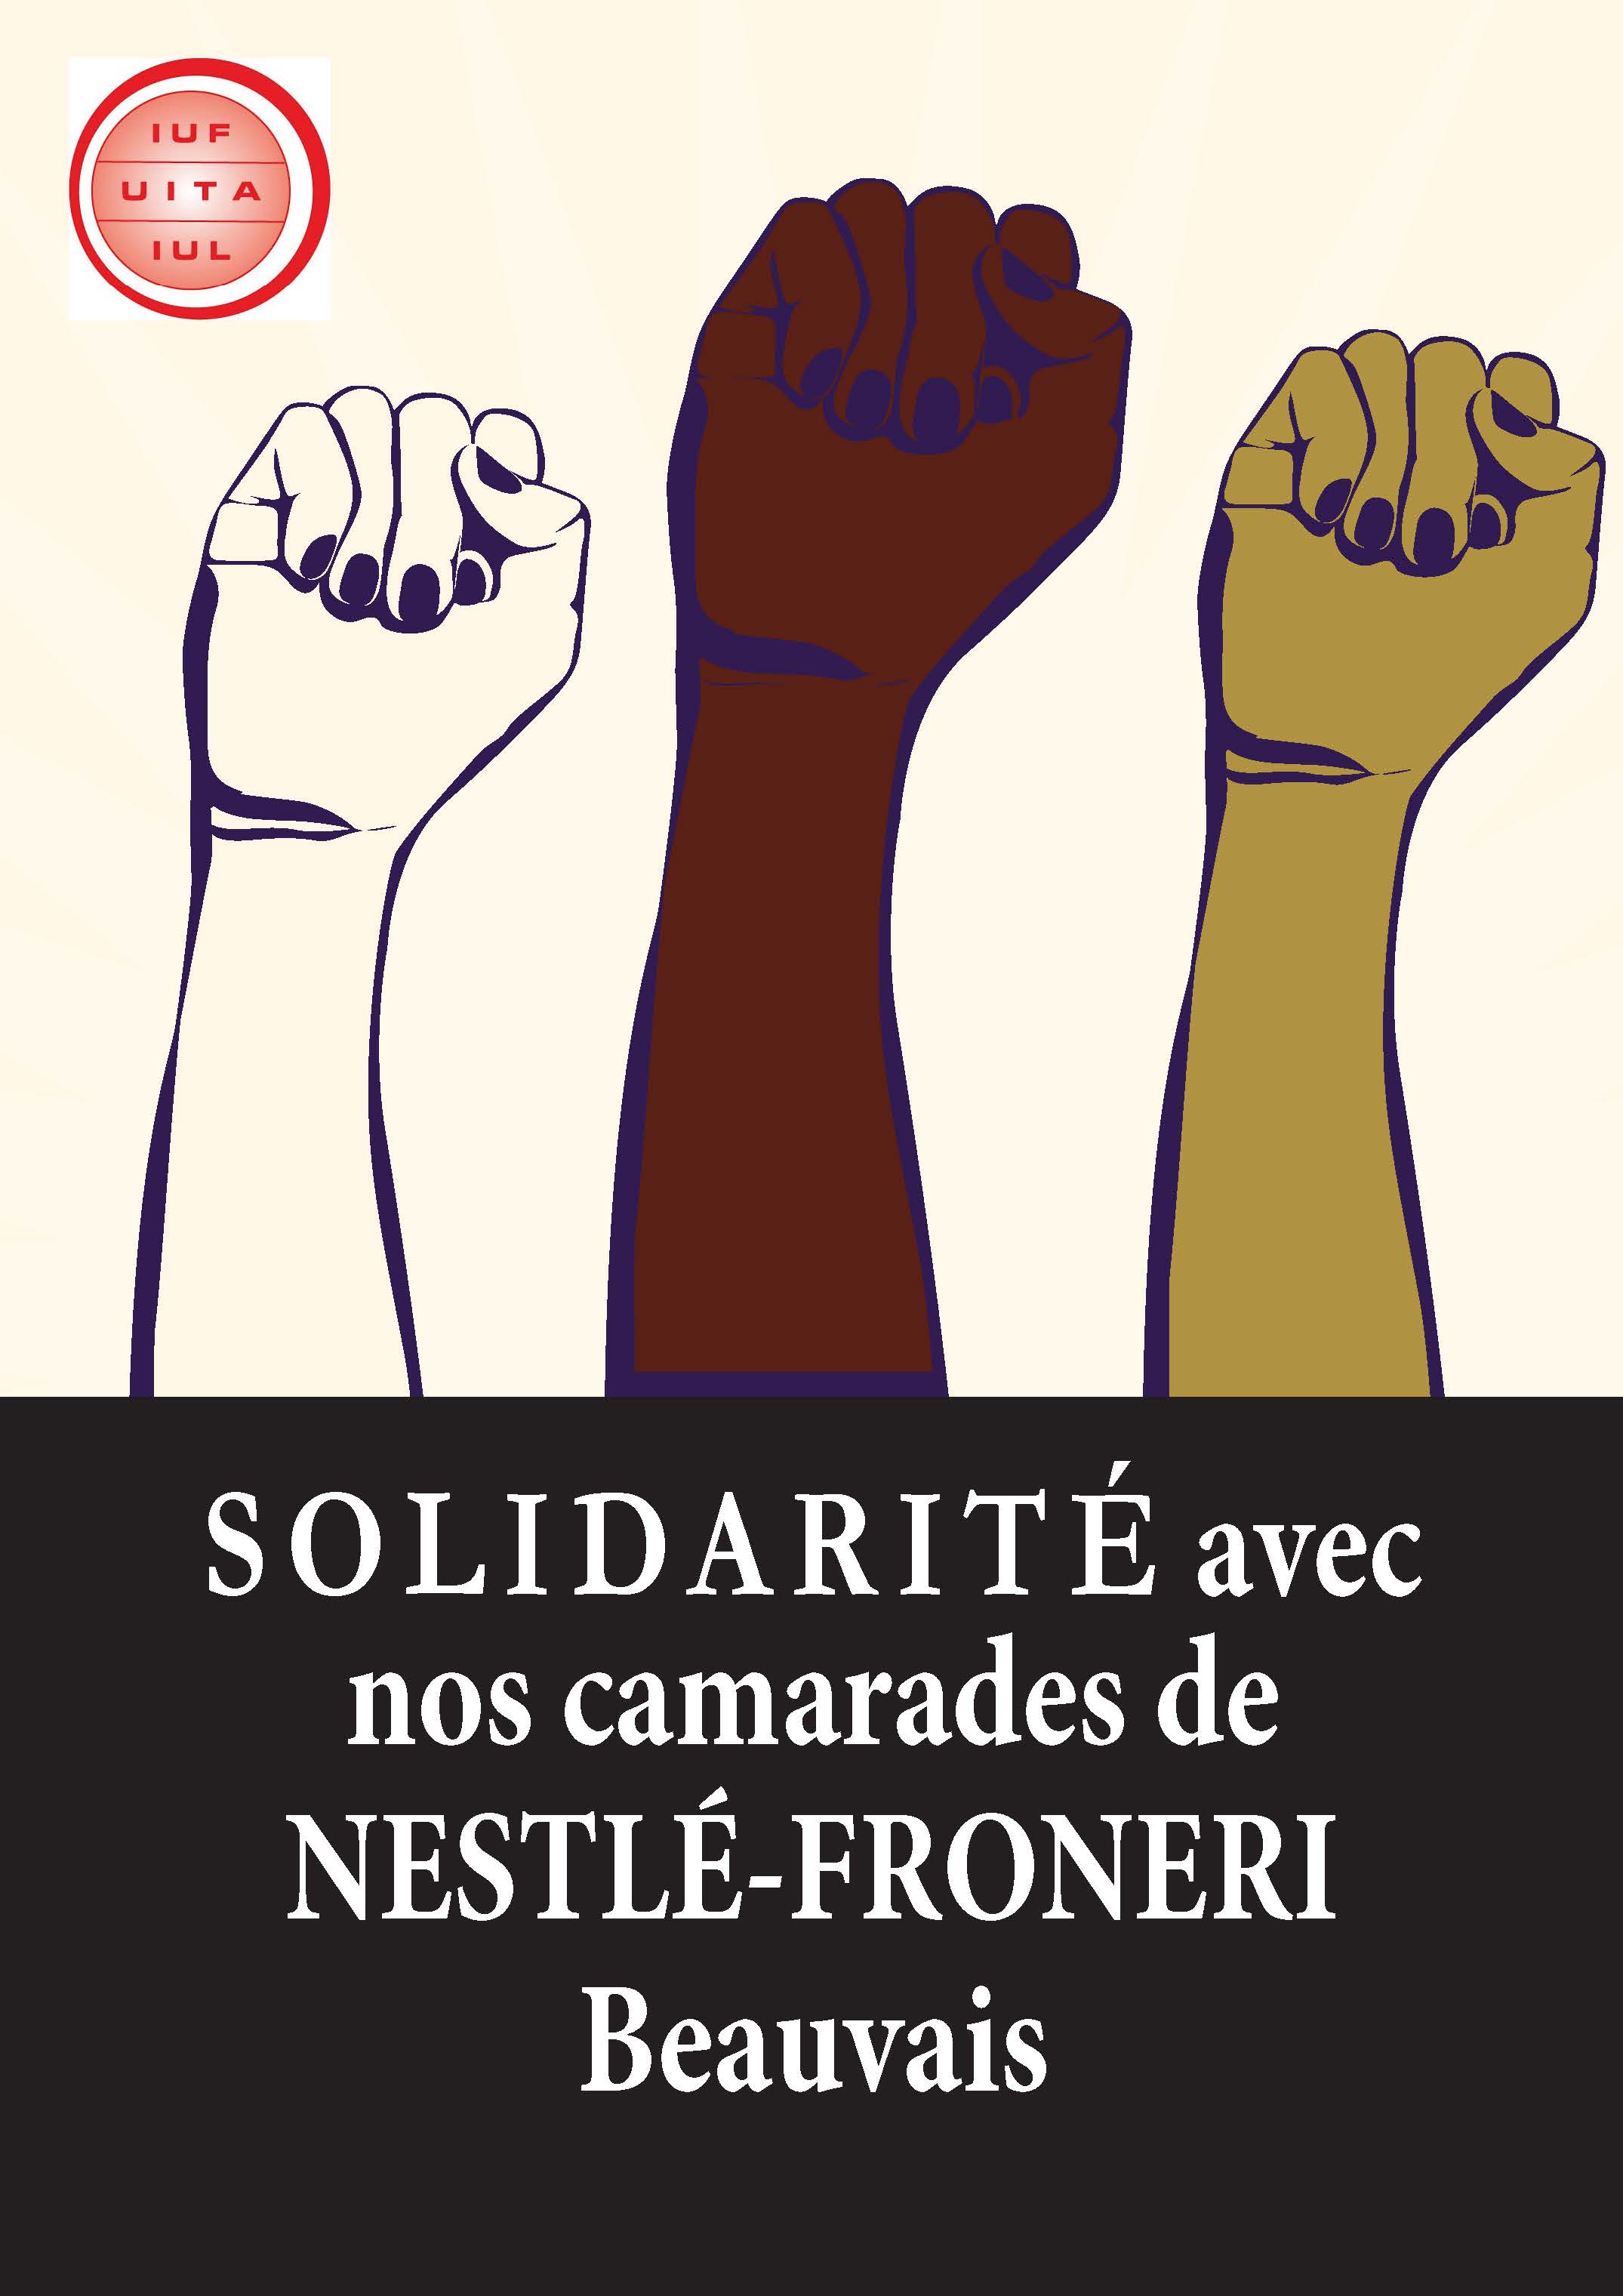 BeauvaisSolidarity-fr